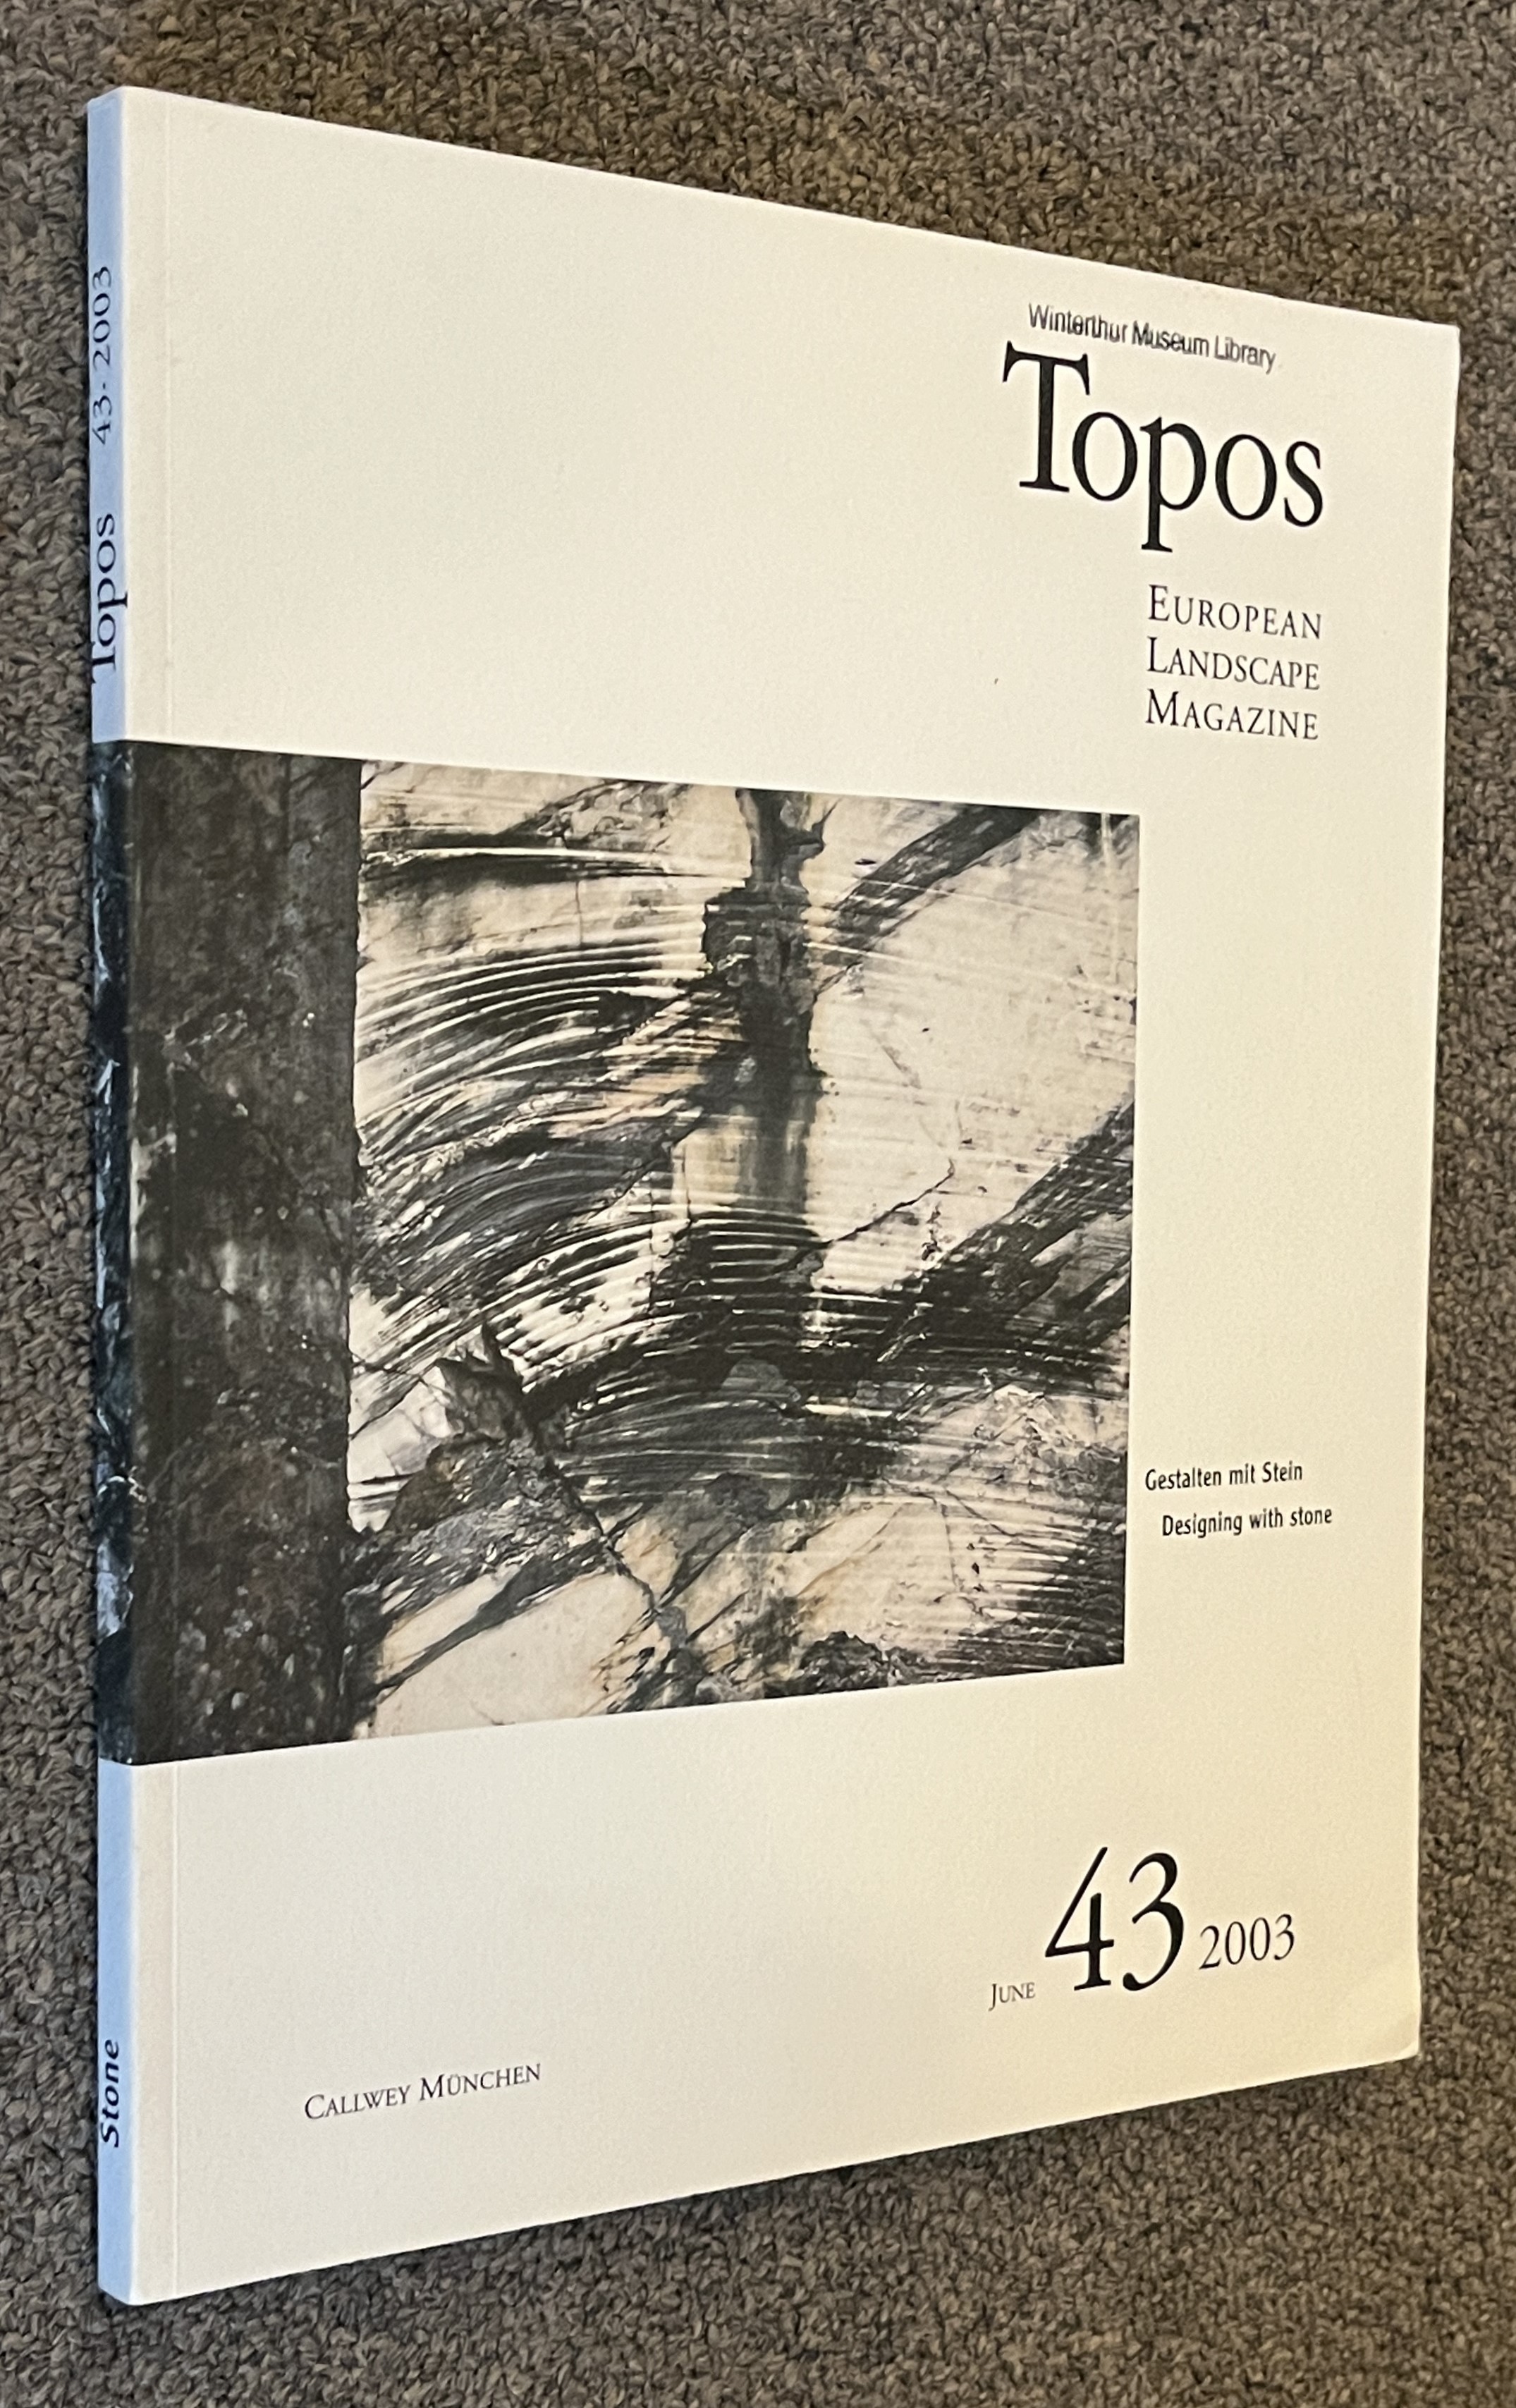 TOPOS; European Landscape Magazine # 43, June 2003: Gestalten Mit Stein / Designing with Stone - Schafer, Robert (Ed) ; Various